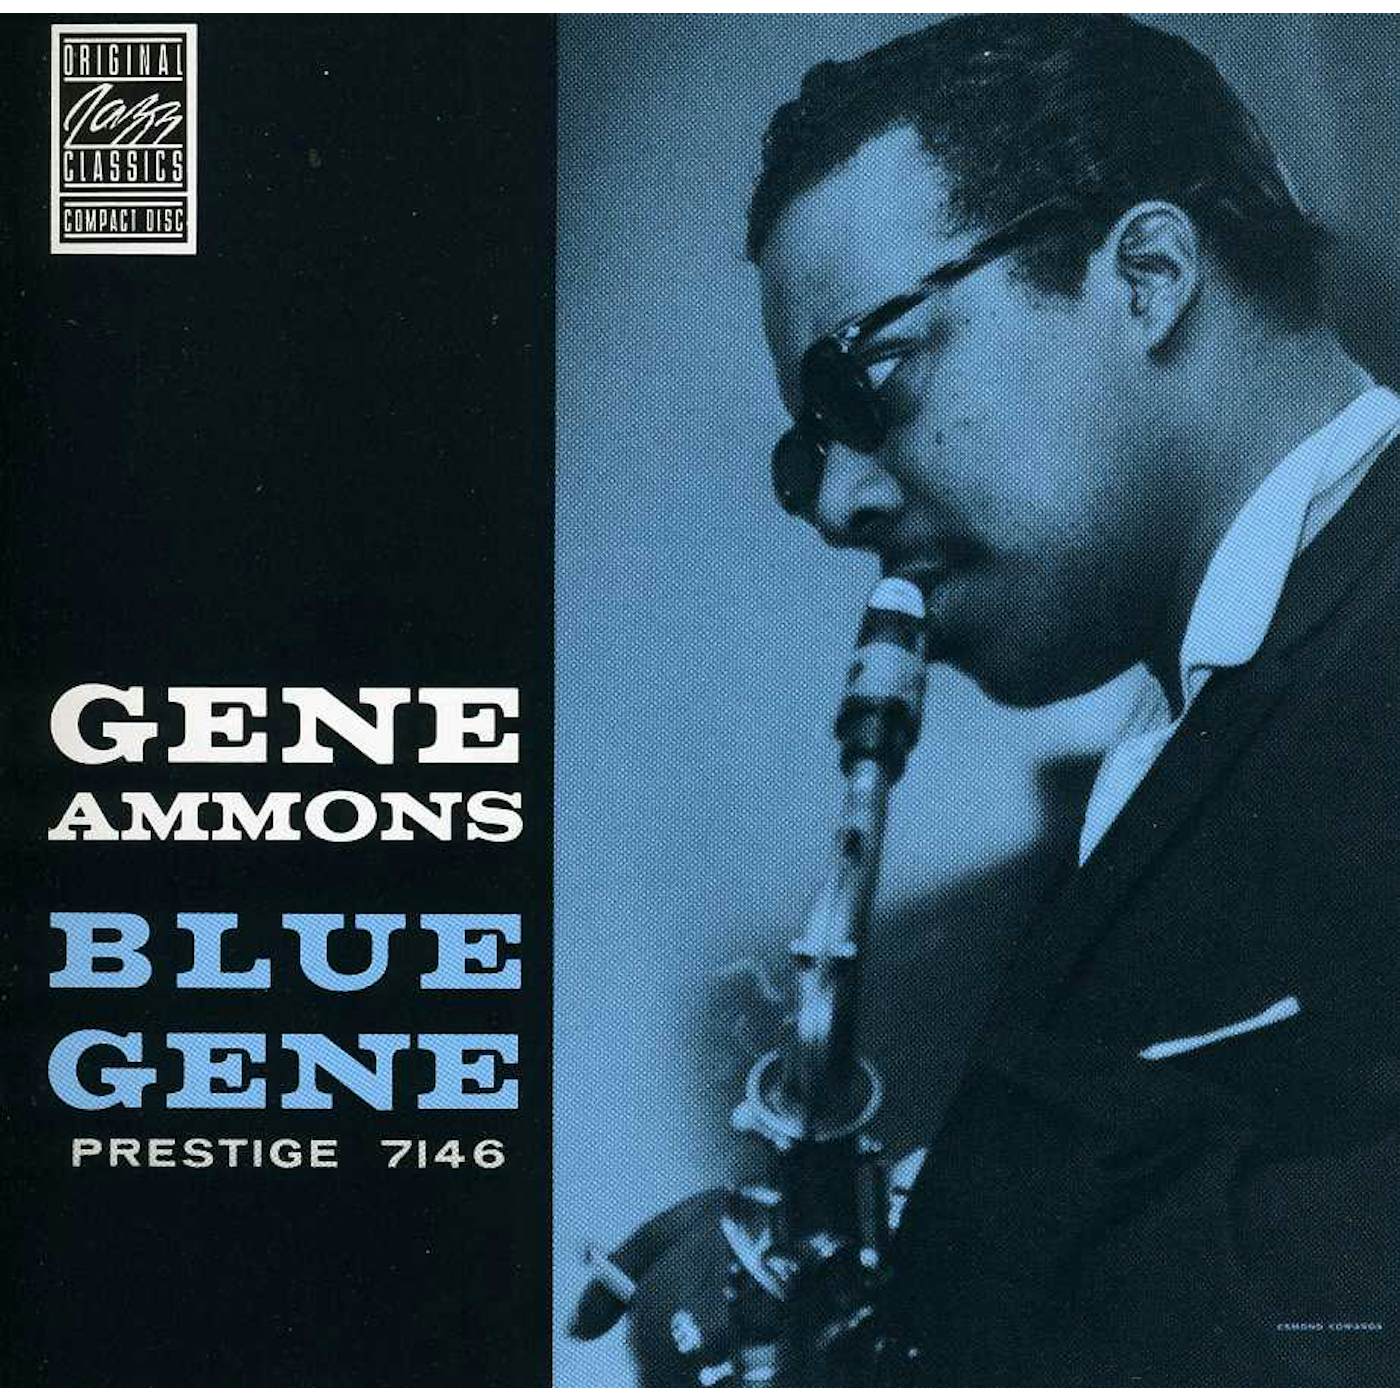 Gene Ammons BLUE GENE CD